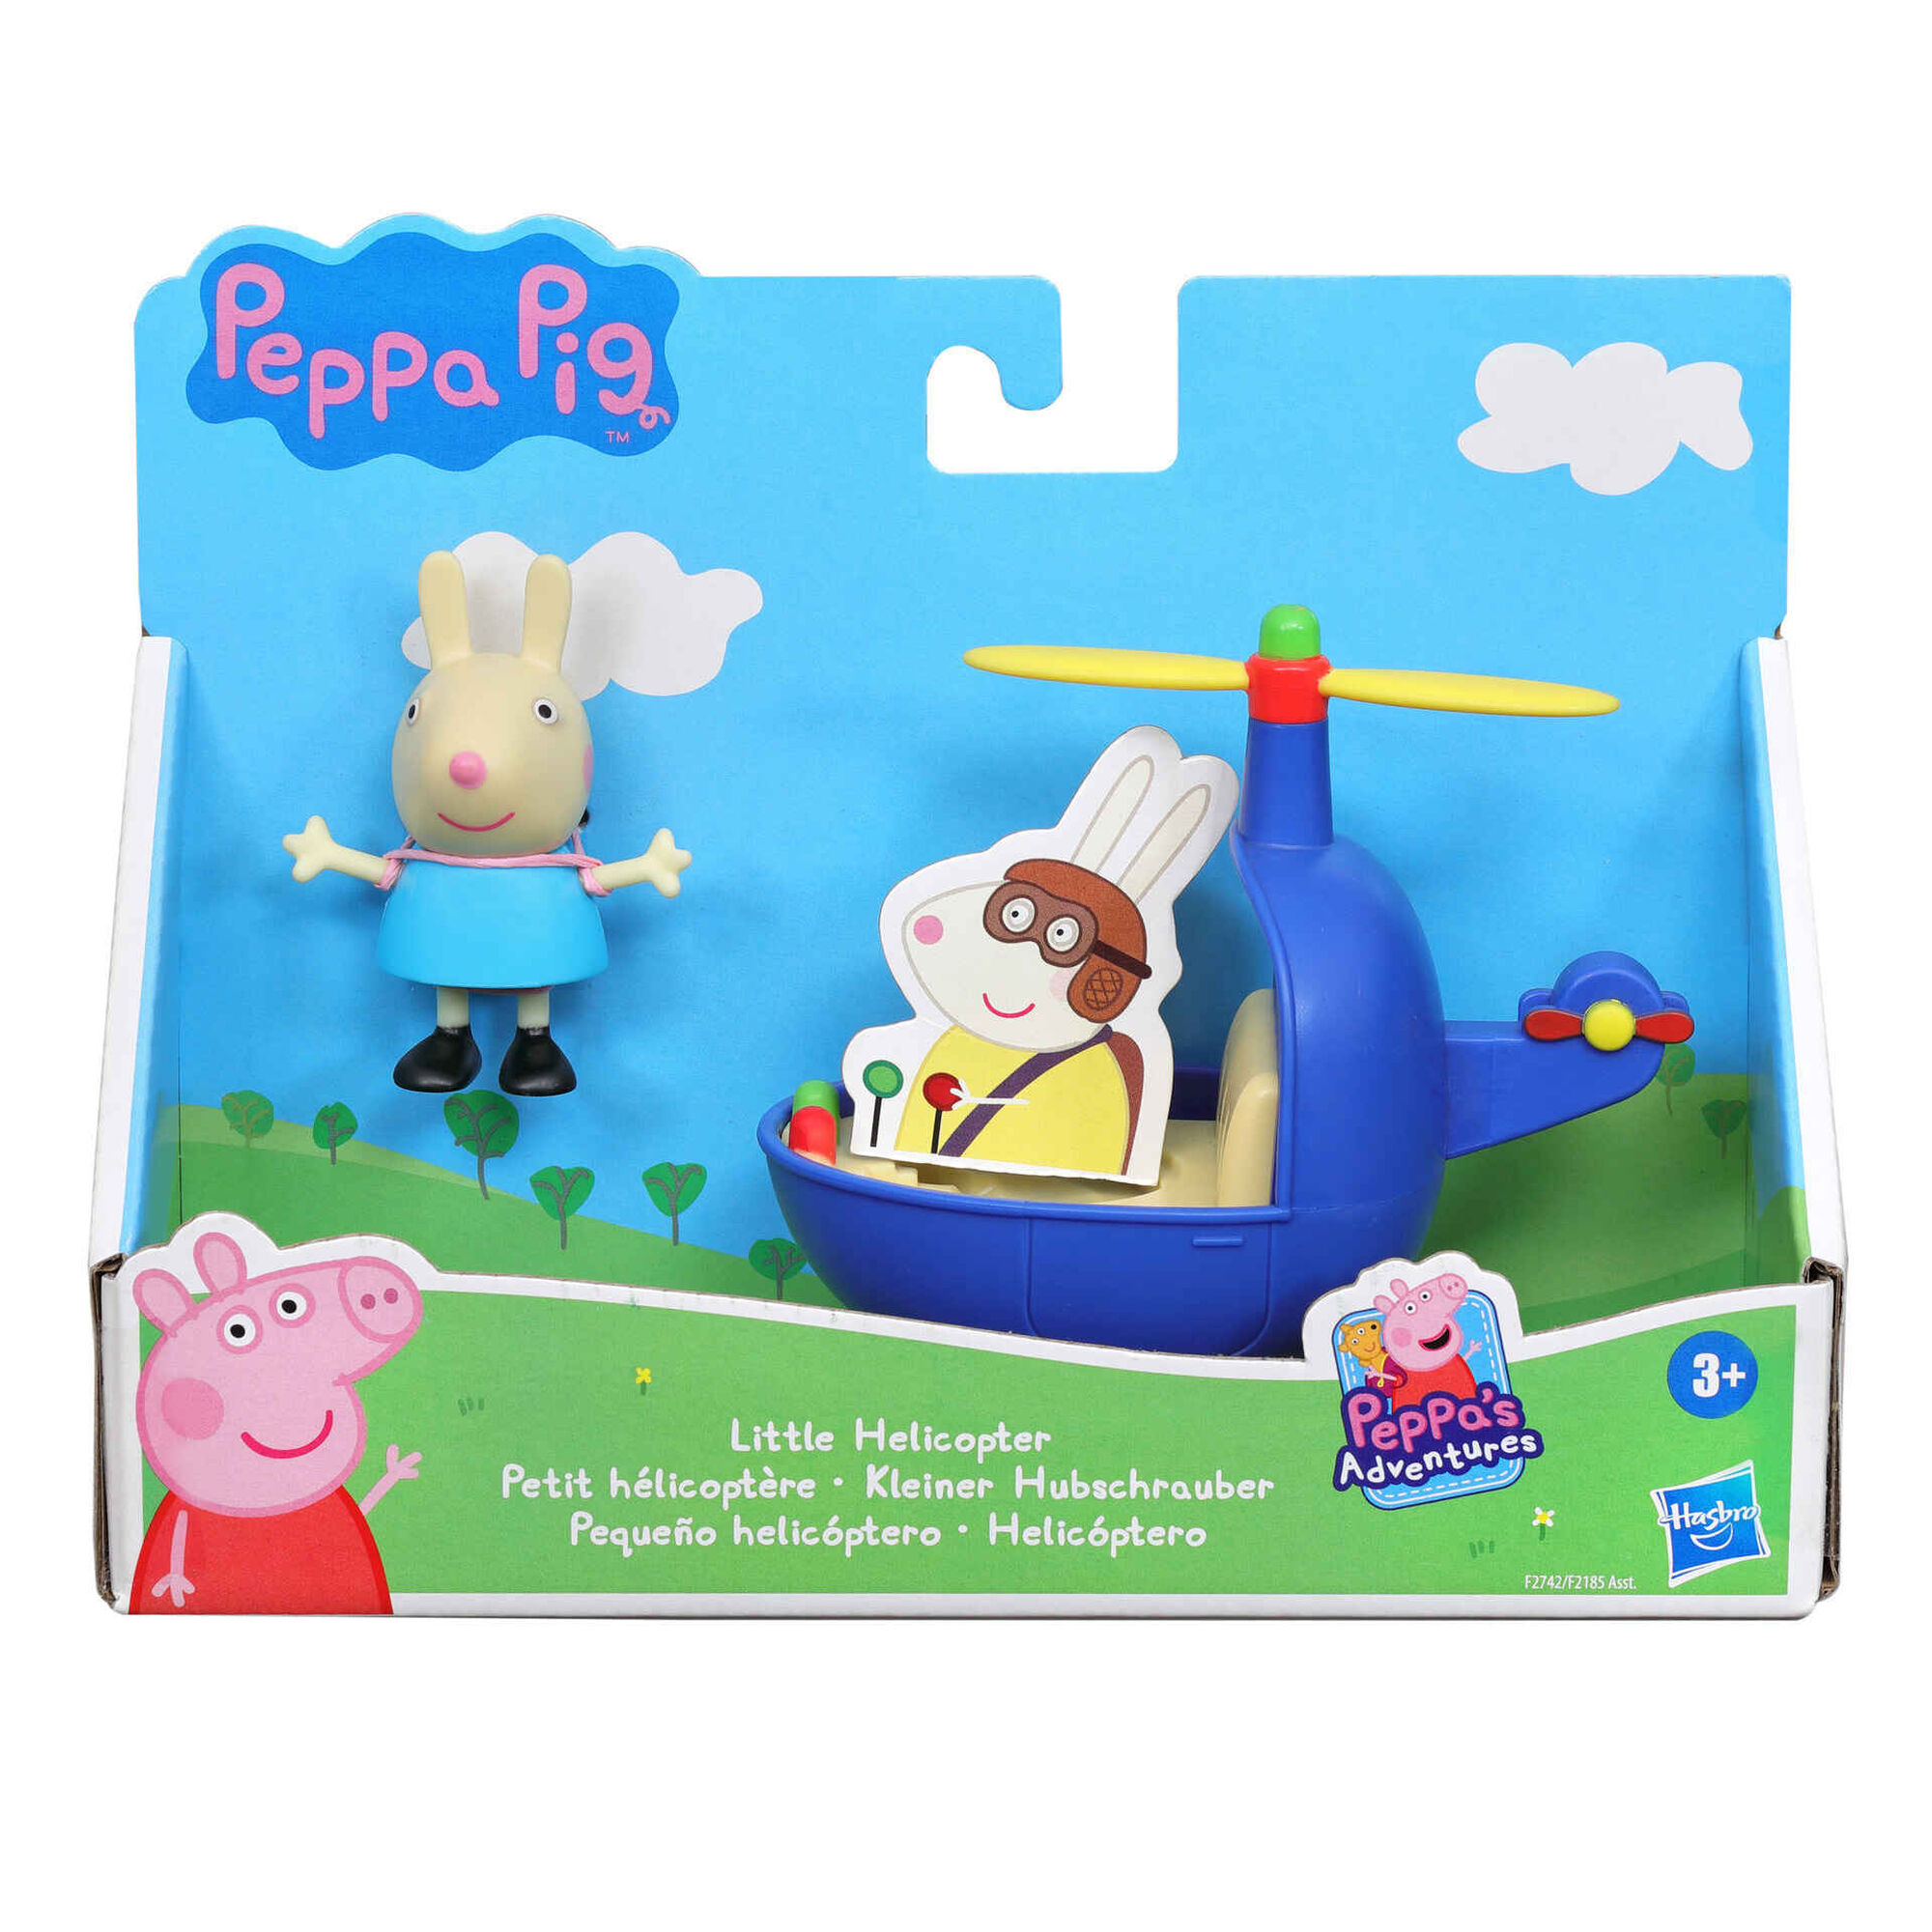 Conjunto de Desenho Peppa Pig 32 x 25 x 2 cm - Peppa Pig